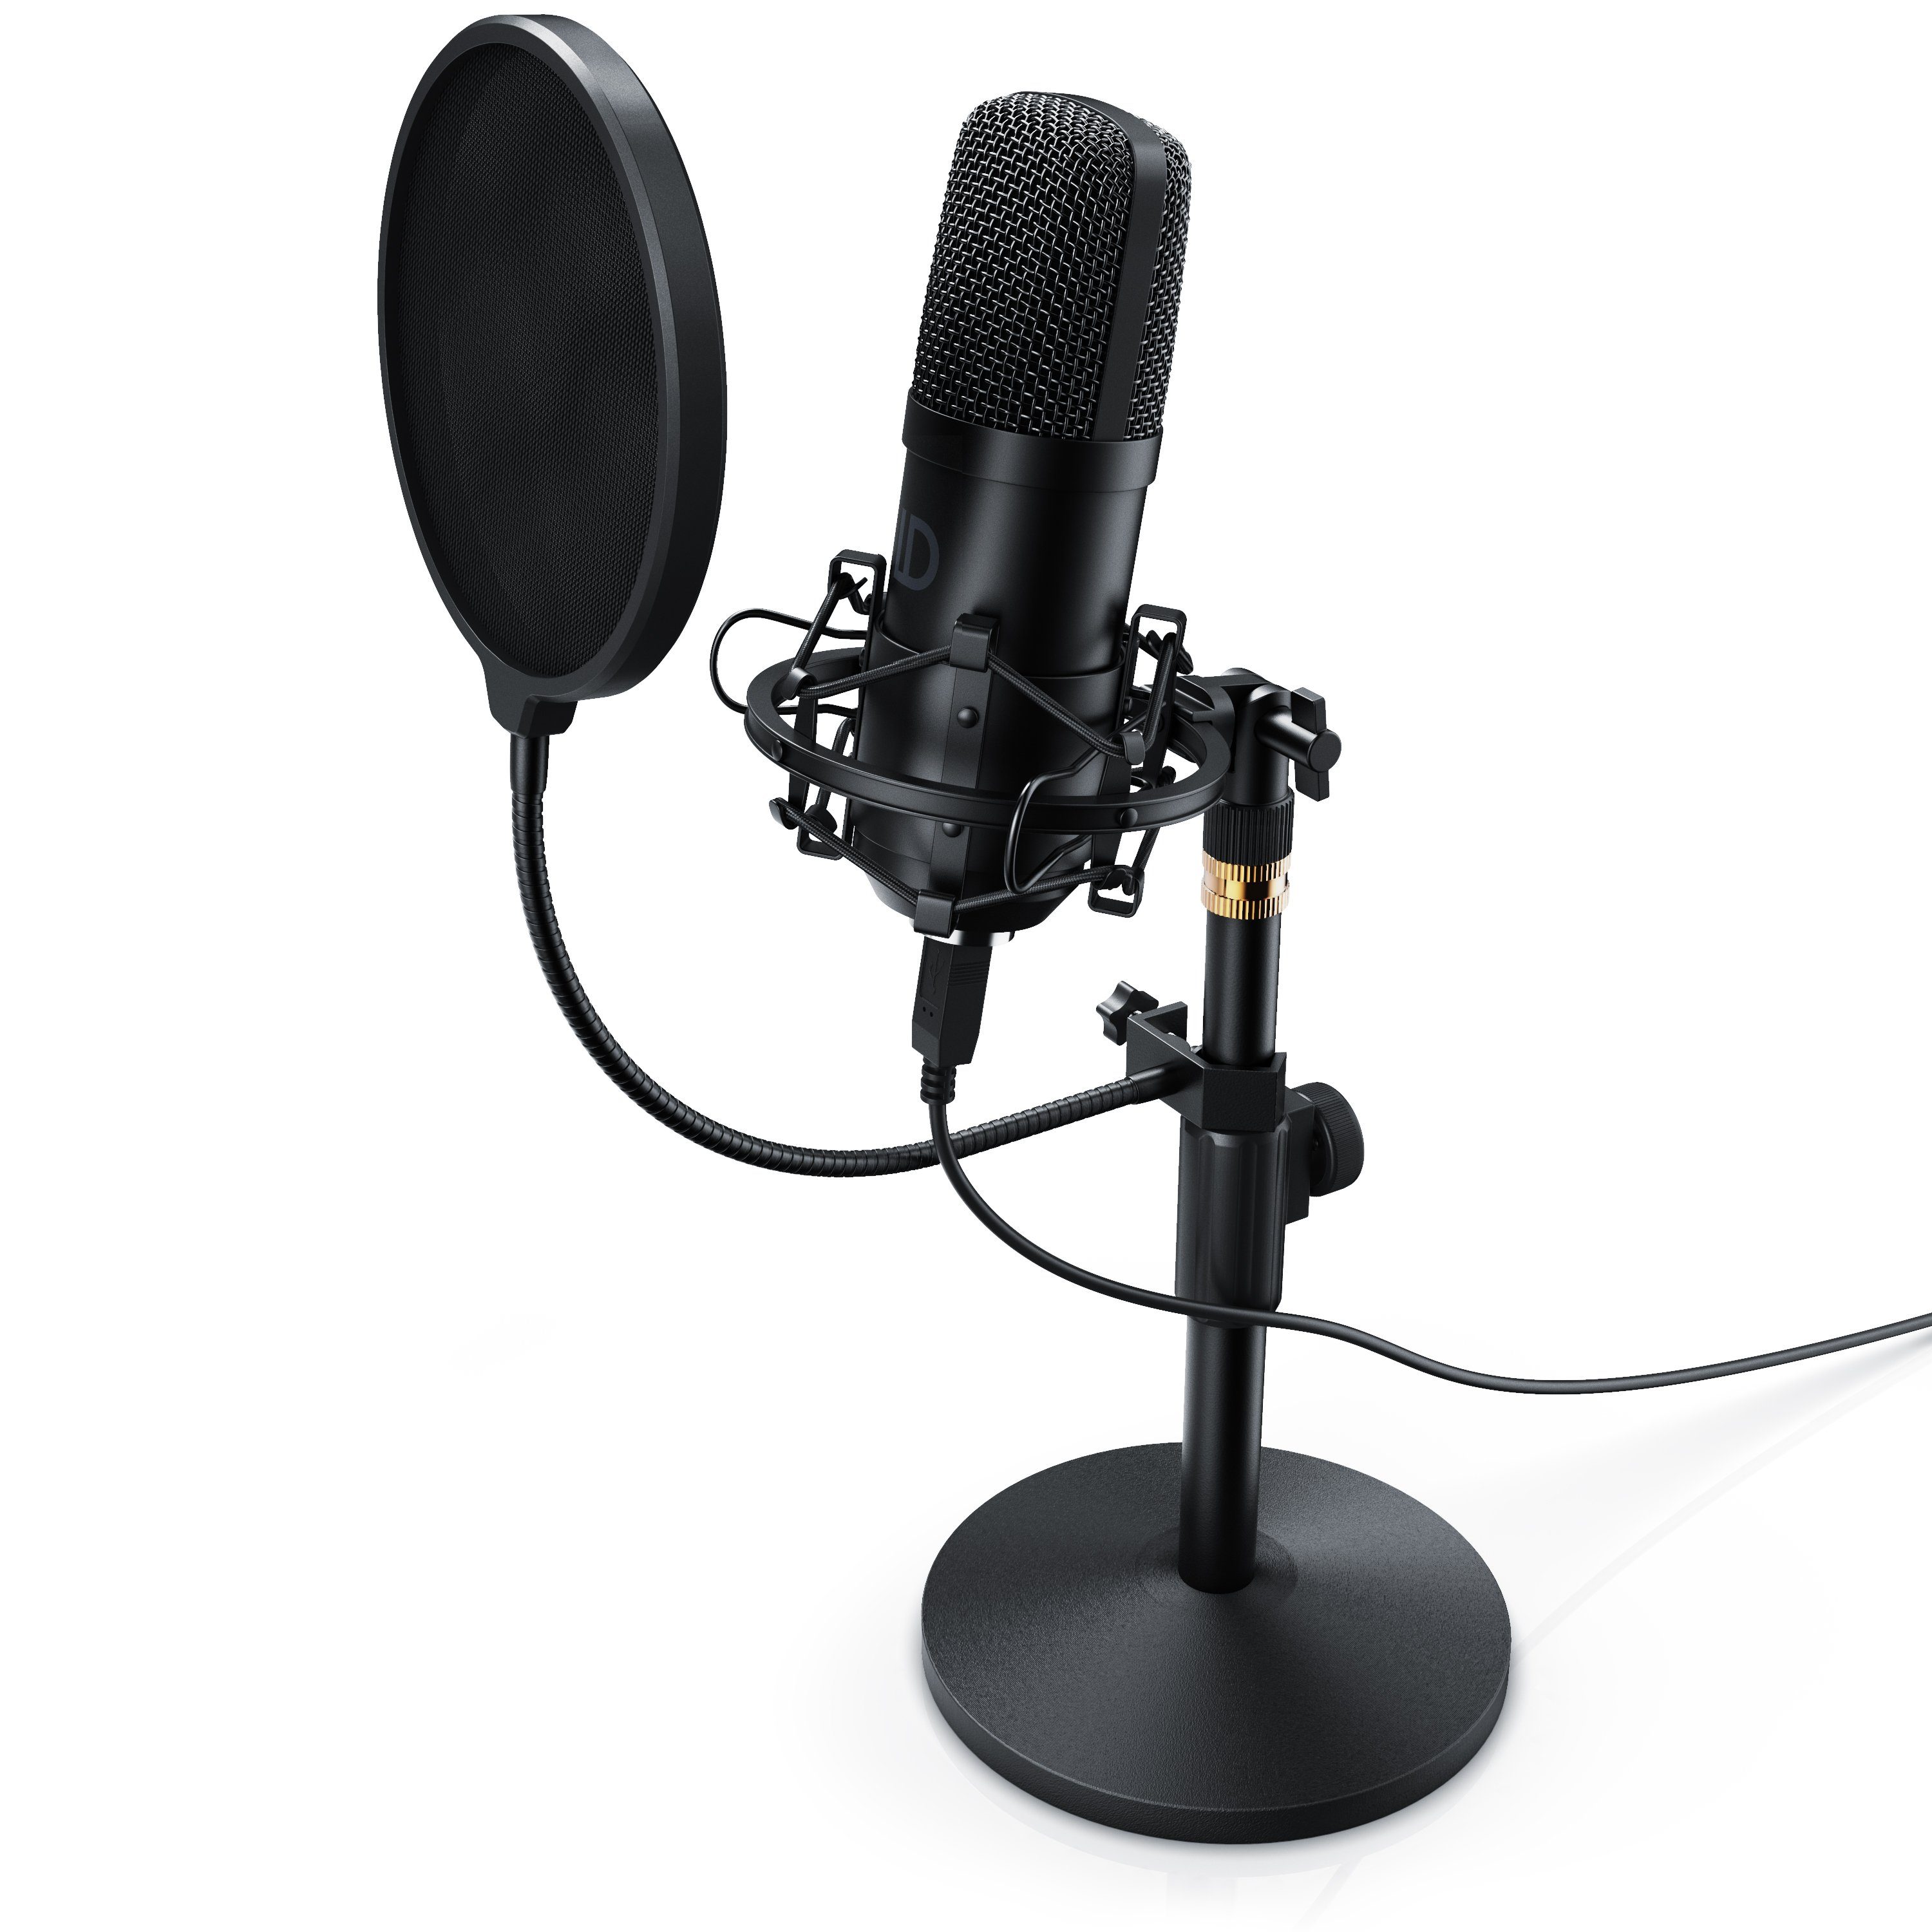 USB Kondensator Mikrofon für PC Studio mit Stativ und Arm Professionelle Podcast-Mikrofonsets 192kHZ/24bit für Podcasts Rundfunk Aufnahme YouTube 